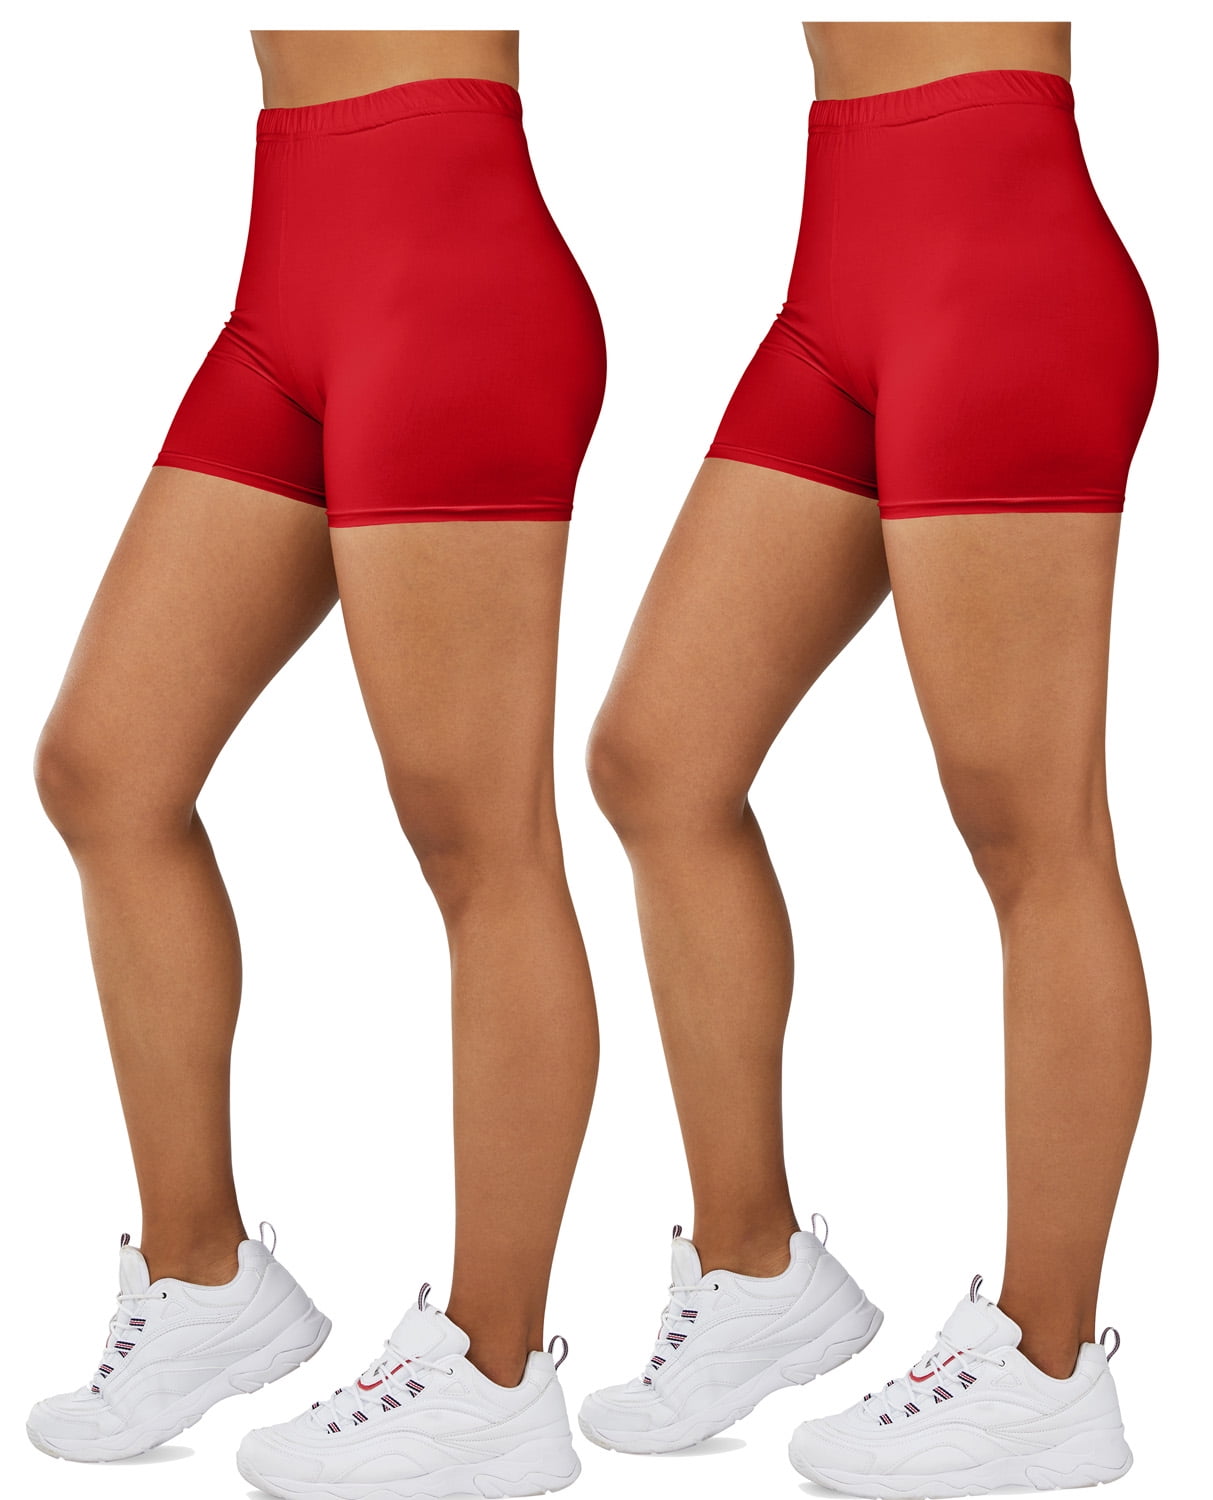 Gilbin Ultra Soft High Waist Yoga Stretch Mini-Bike Shorts Leggings